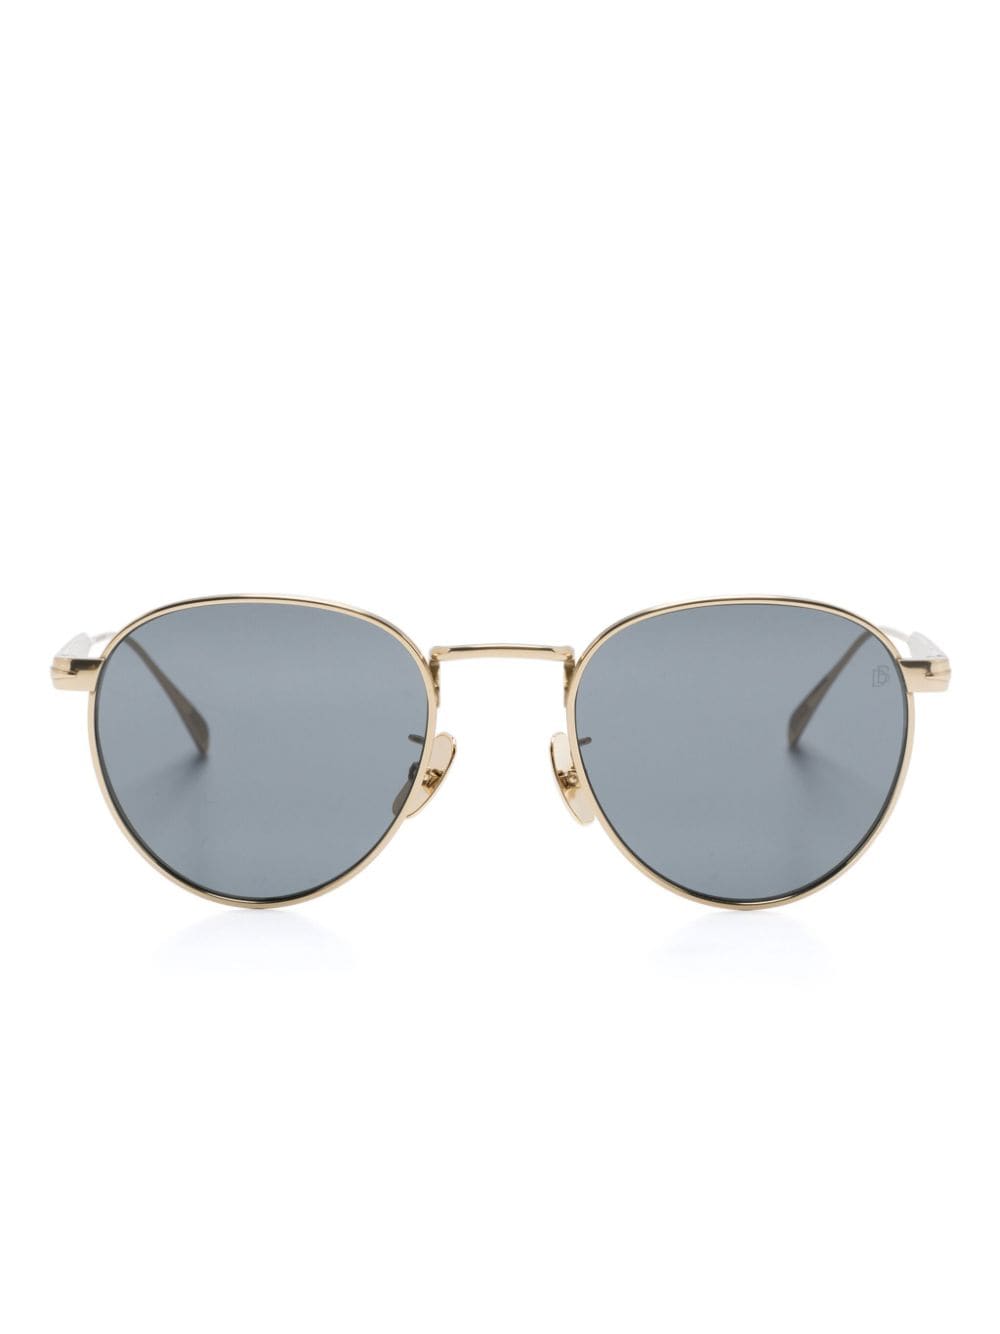 Eyewear by David Beckham DB 1142 round-frame sunglasses - Gold von Eyewear by David Beckham